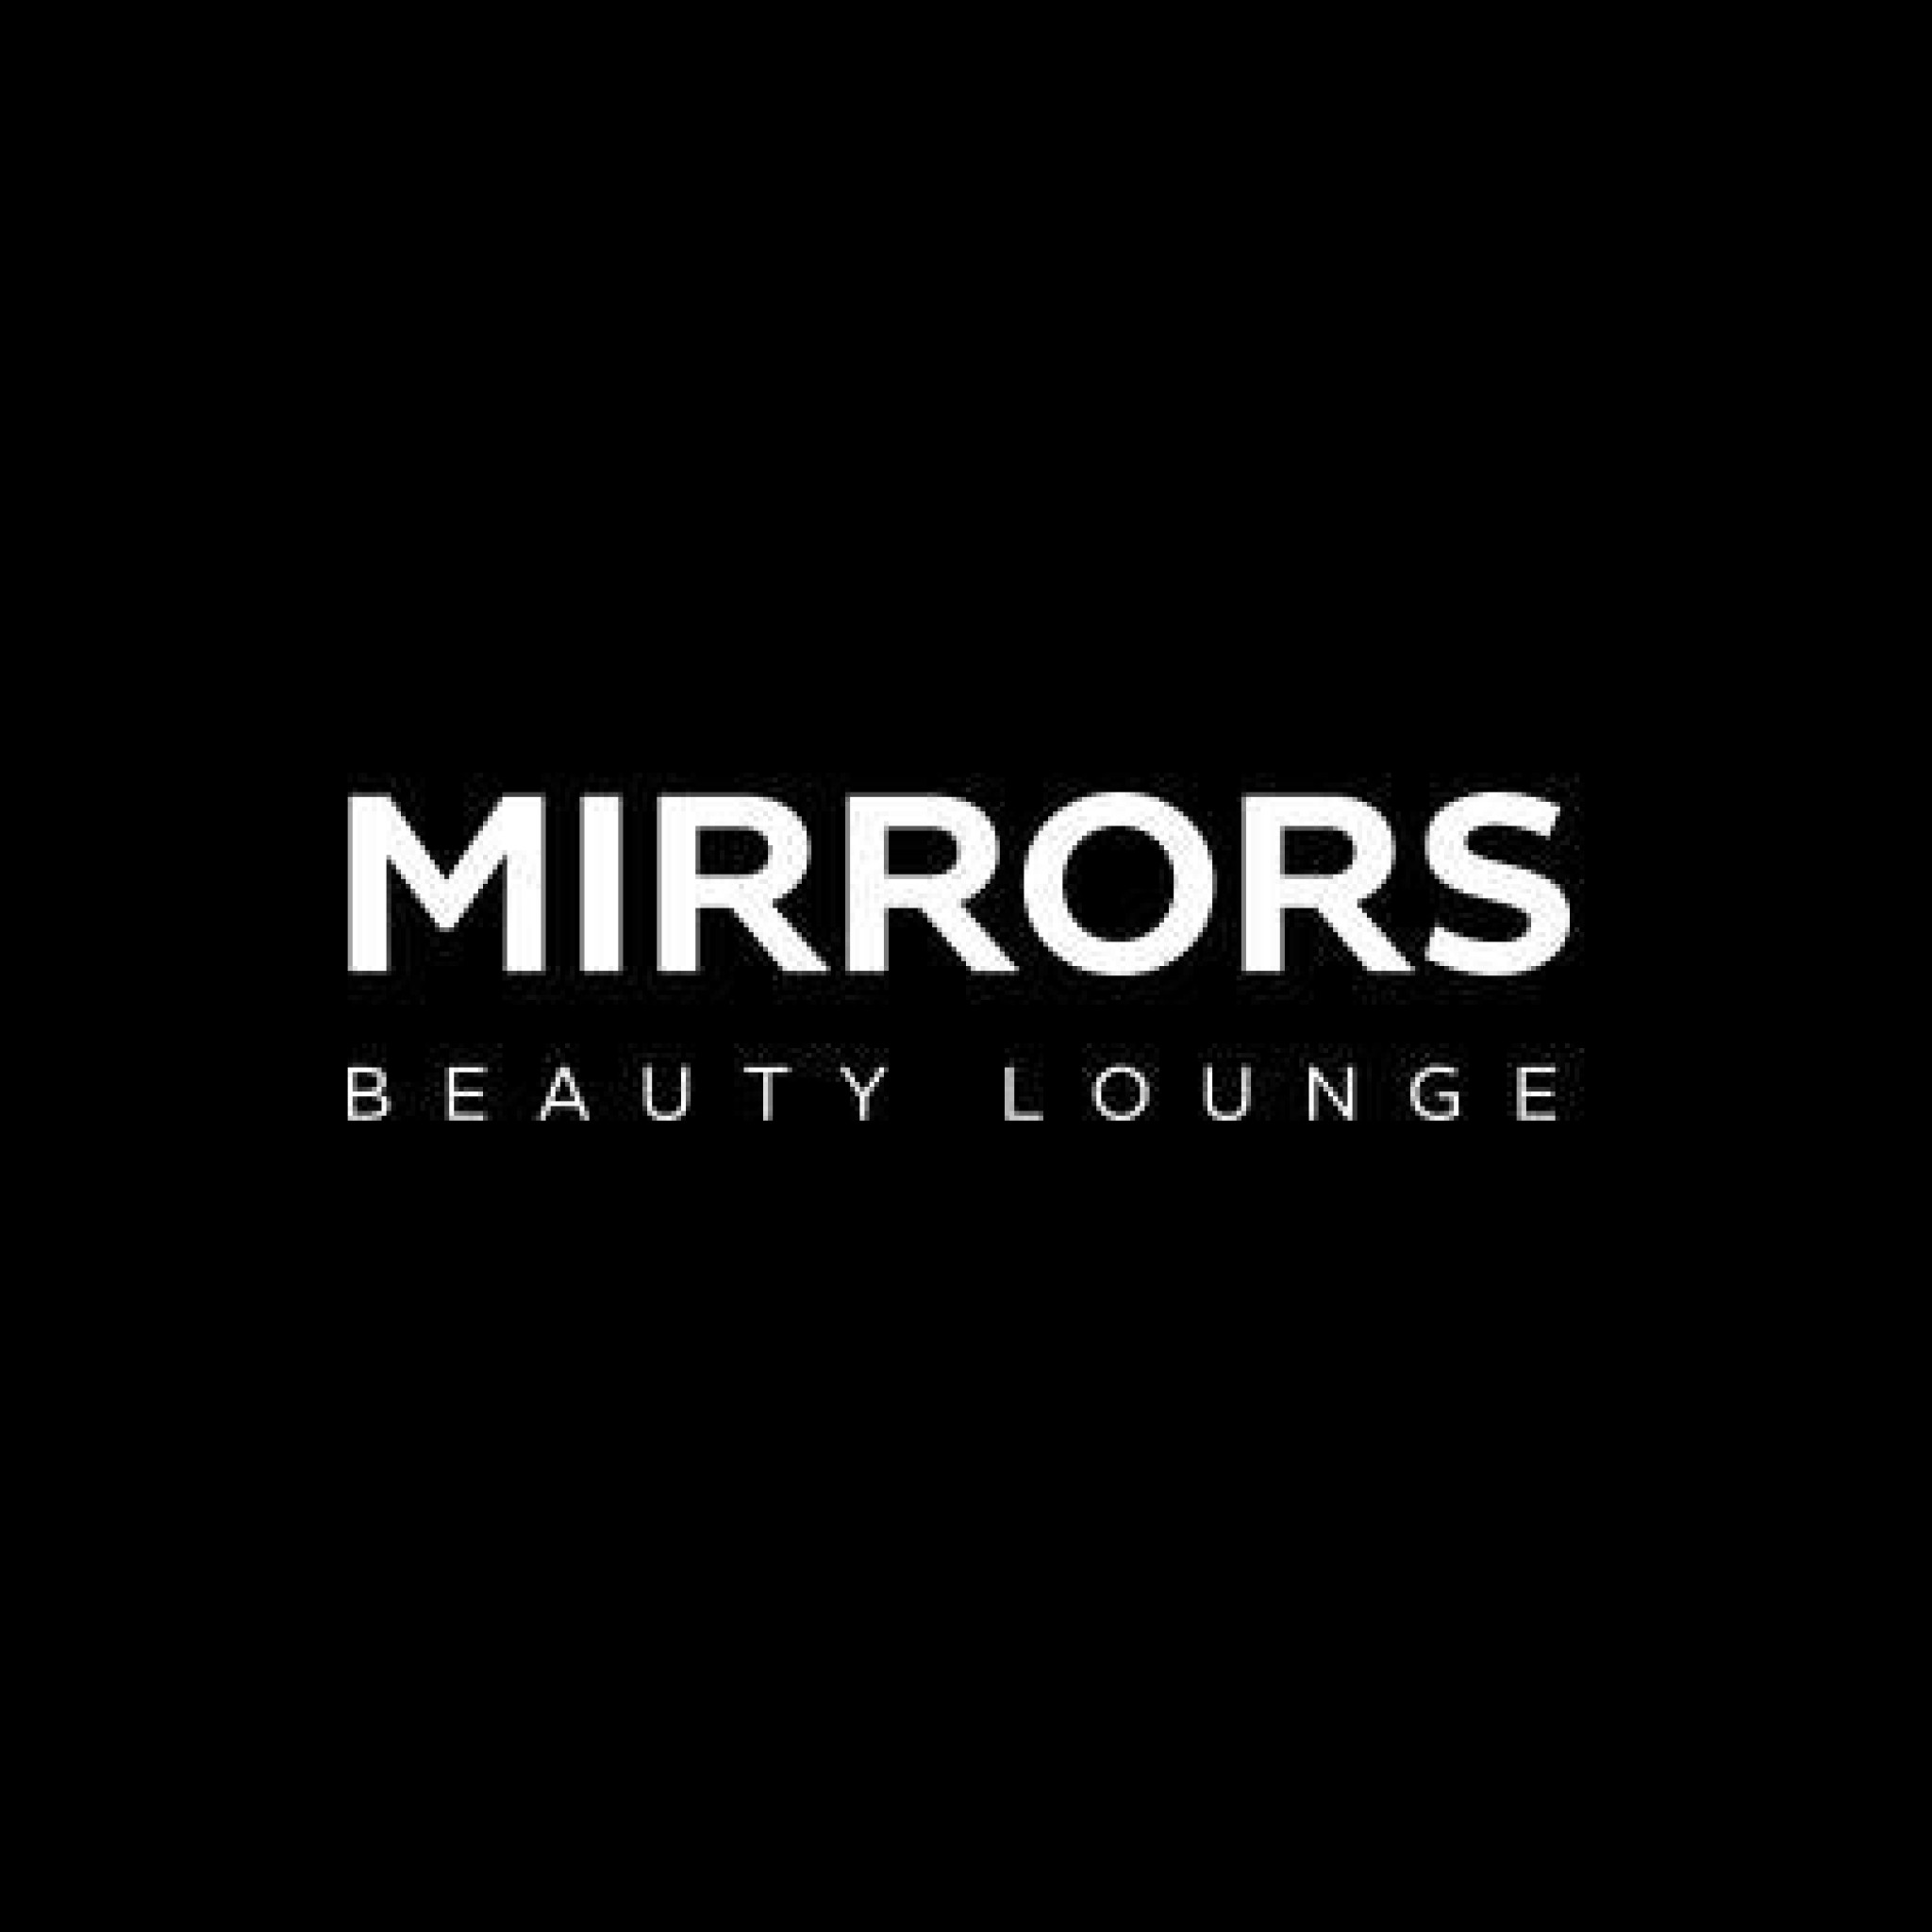 Mirrors Beauty Lounge - Marina